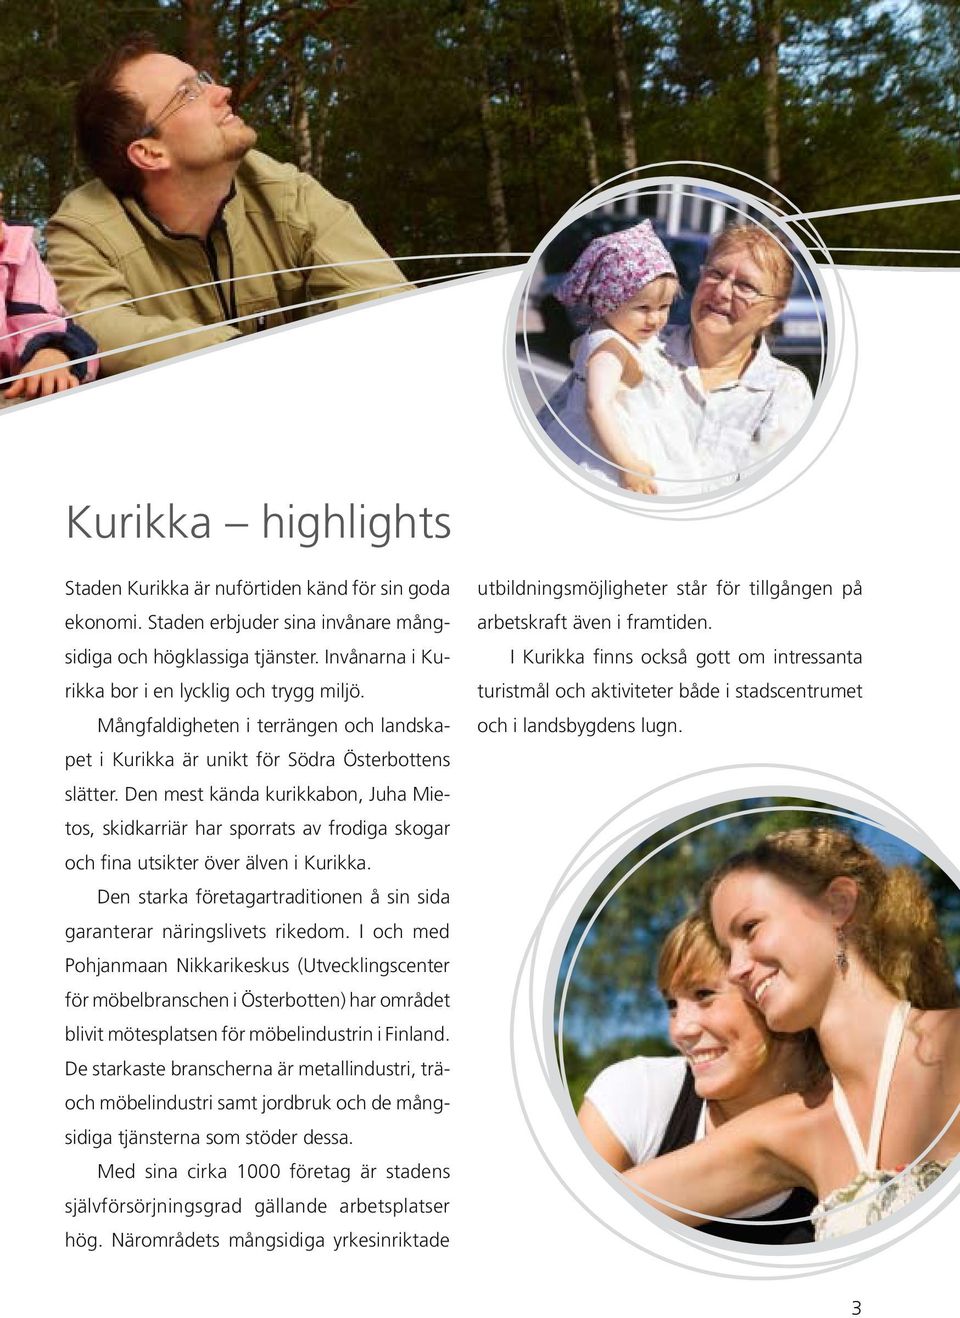 Den mest kända kurikkabon, Juha Mietos, skidkarriär har sporrats av frodiga skogar och fina utsikter över älven i Kurikka. Den starka företagartraditionen å sin sida garanterar näringslivets rikedom.